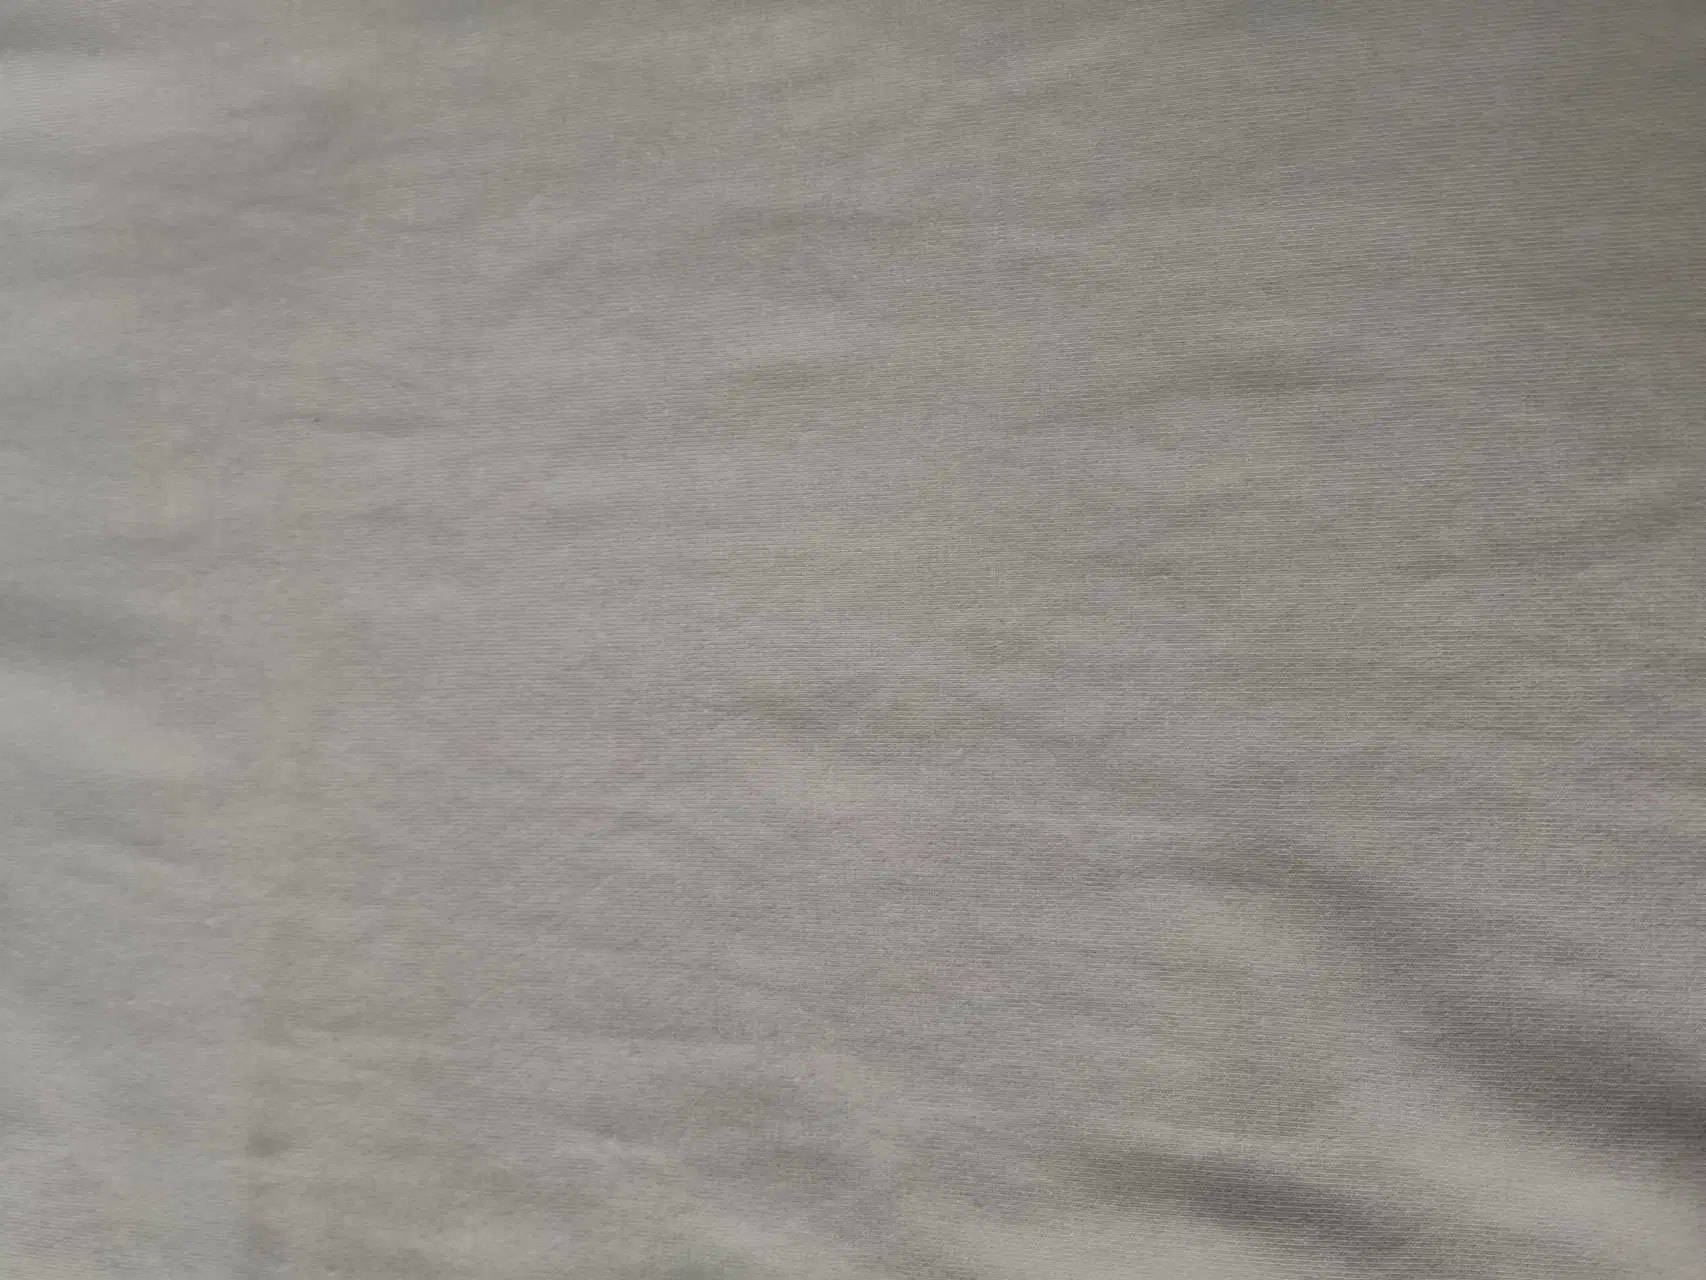 قماش القميص القابل للتمدد من الألياف القطنية المتعددة الإسترادات المصنوعة من القطن في المصنع قماش الجيرسي الأحادي المصنوع من القطن المحفر